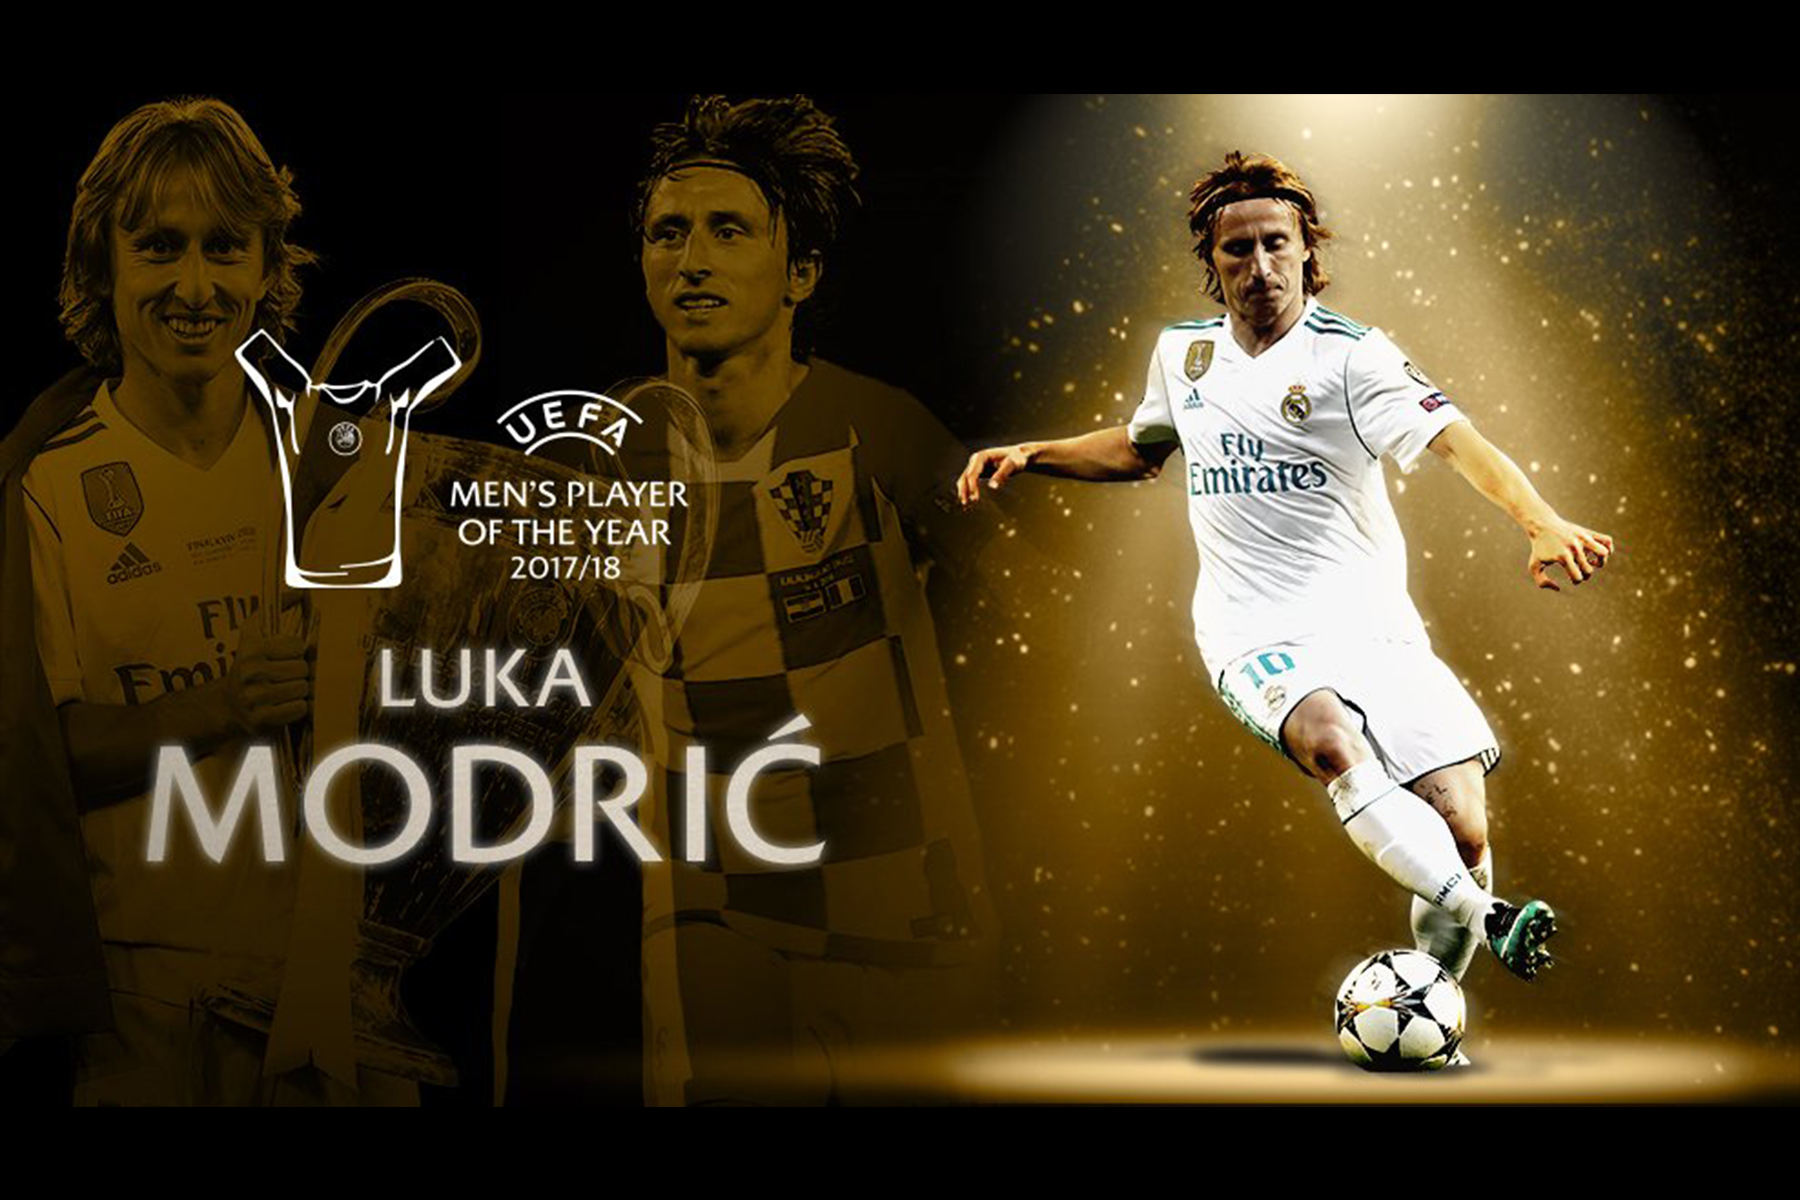 ¡Luka Modric destrona a Cristiano! 